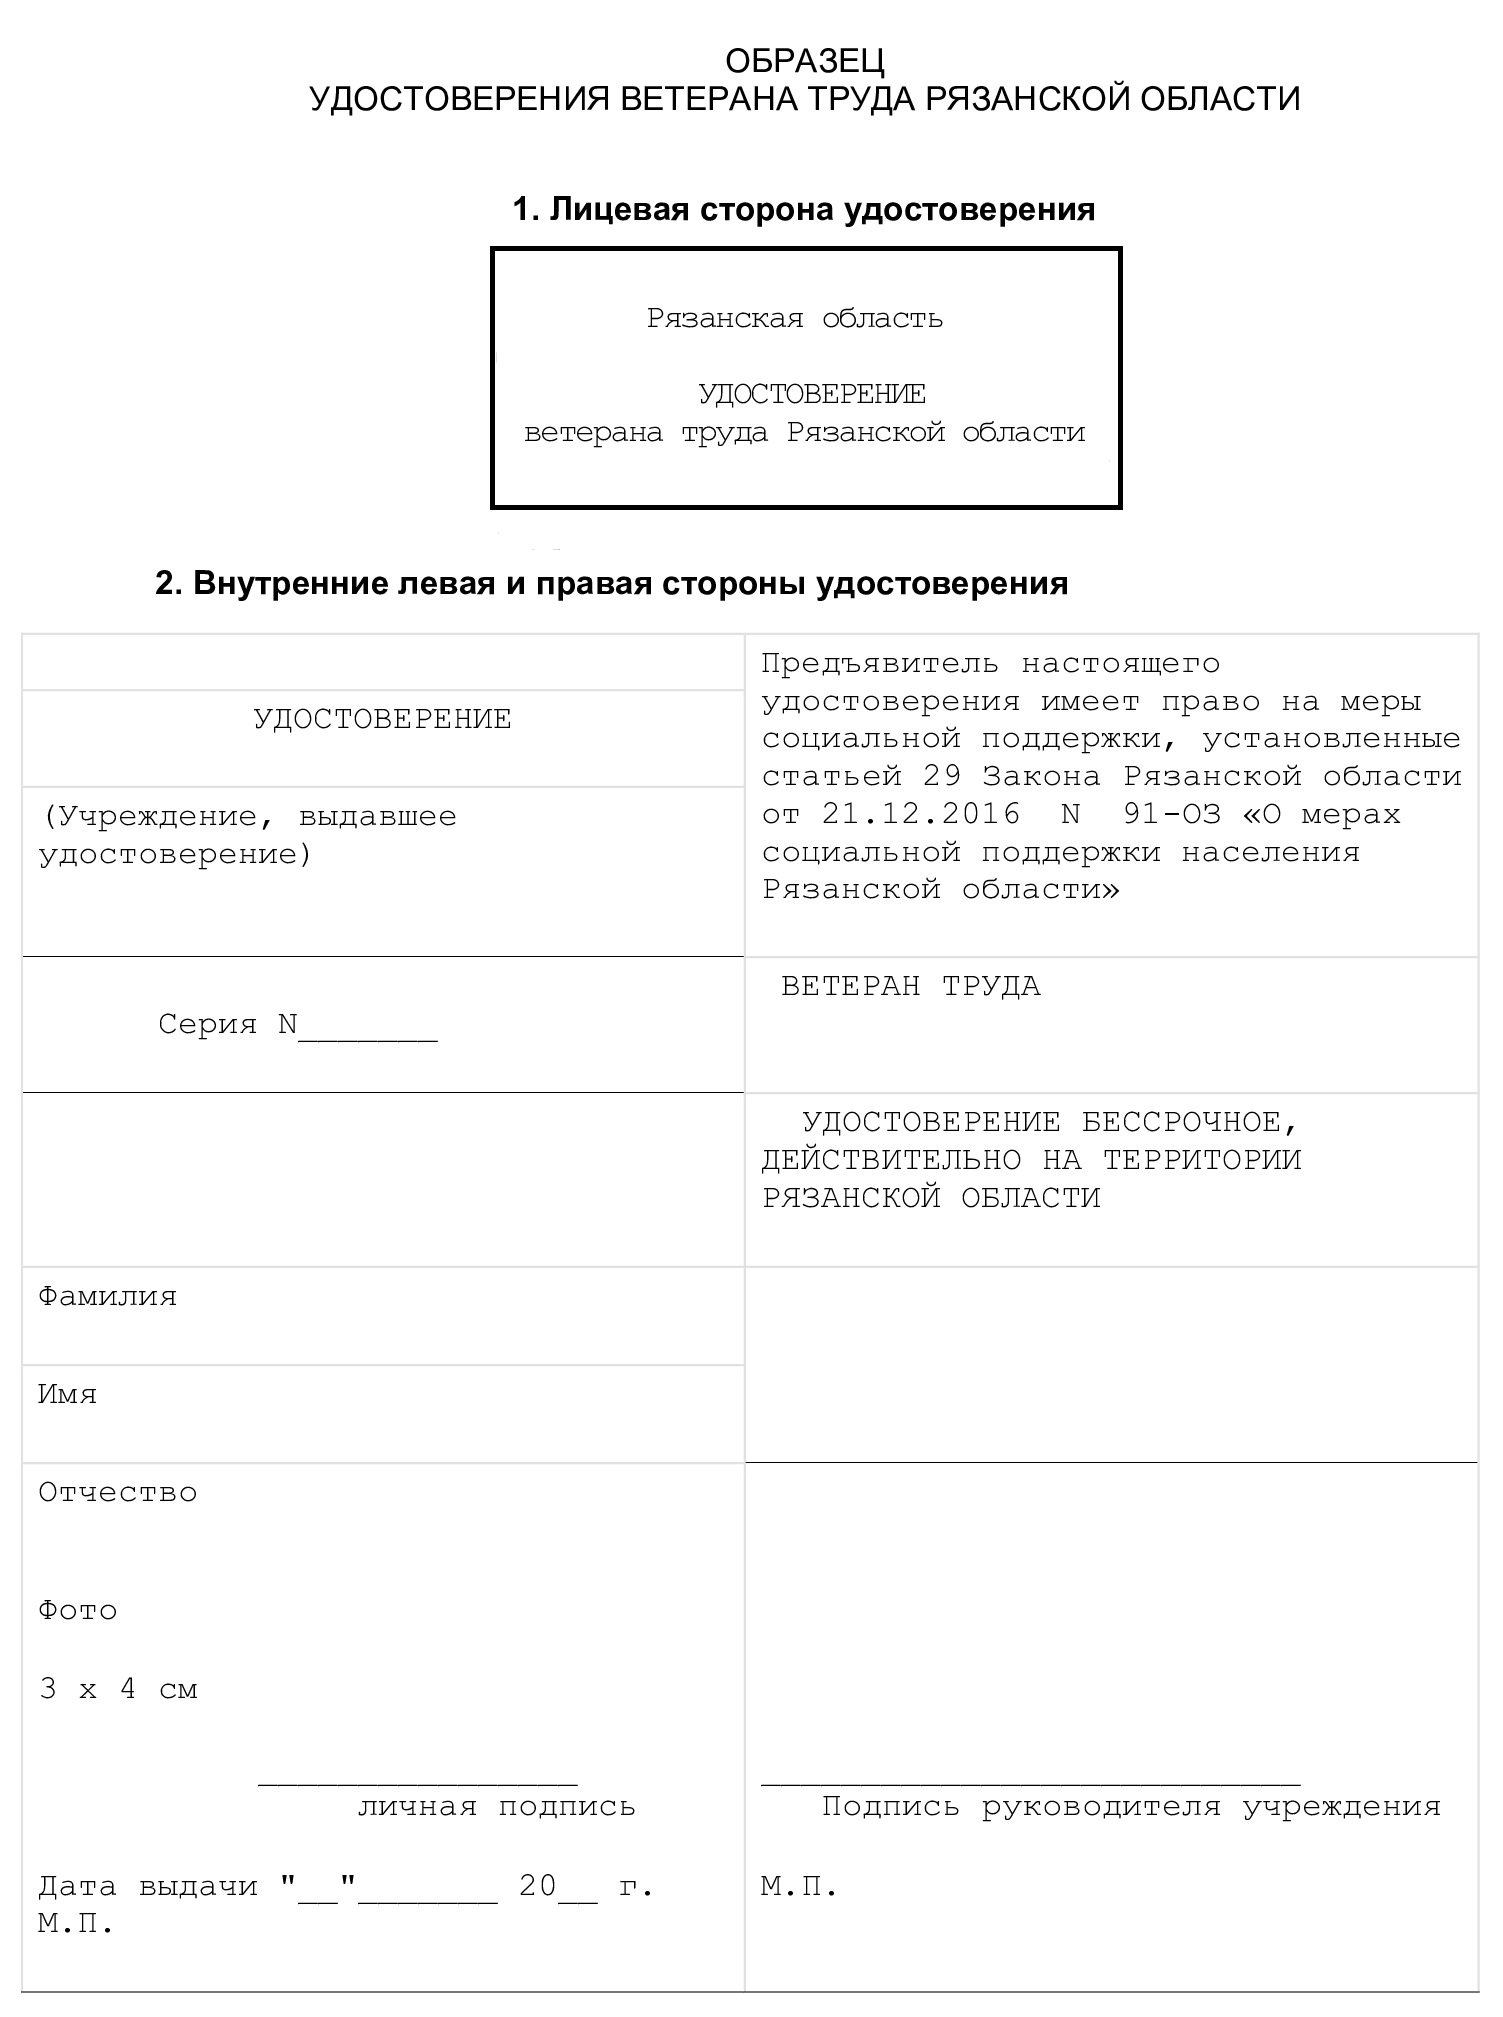 Образец удостоверения «Ветеран труда» в Рязанской области